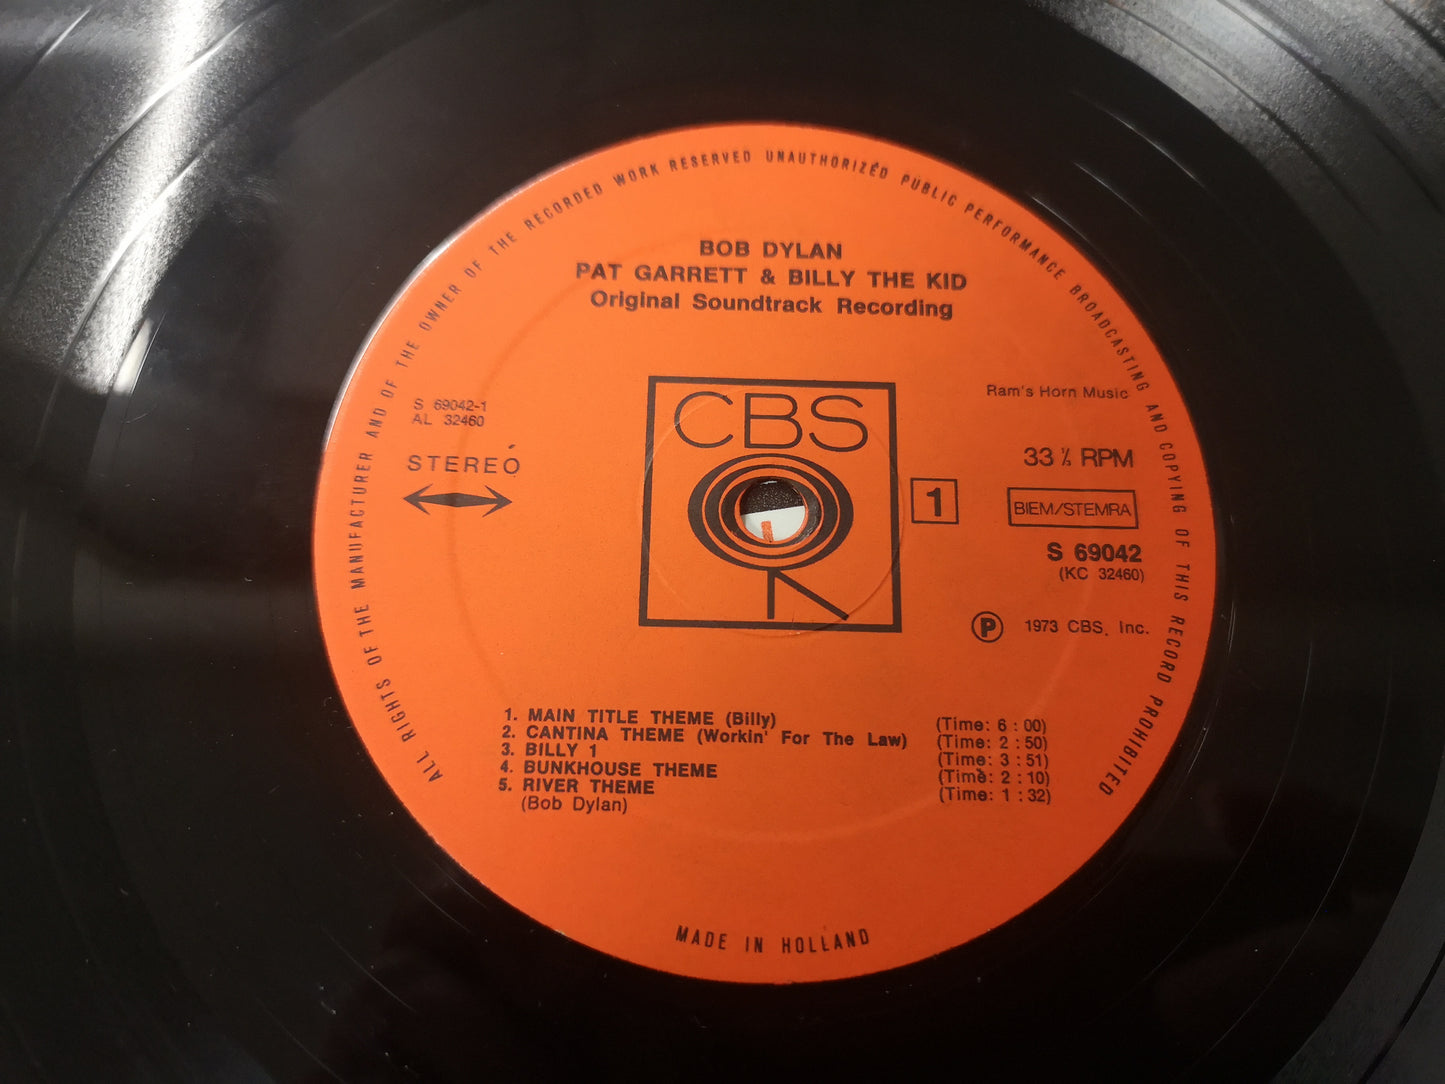 Bob Dylan / Soundtrack "Pat Garrett & Billy the Kid" Orig Holl 1973 VG++/EX